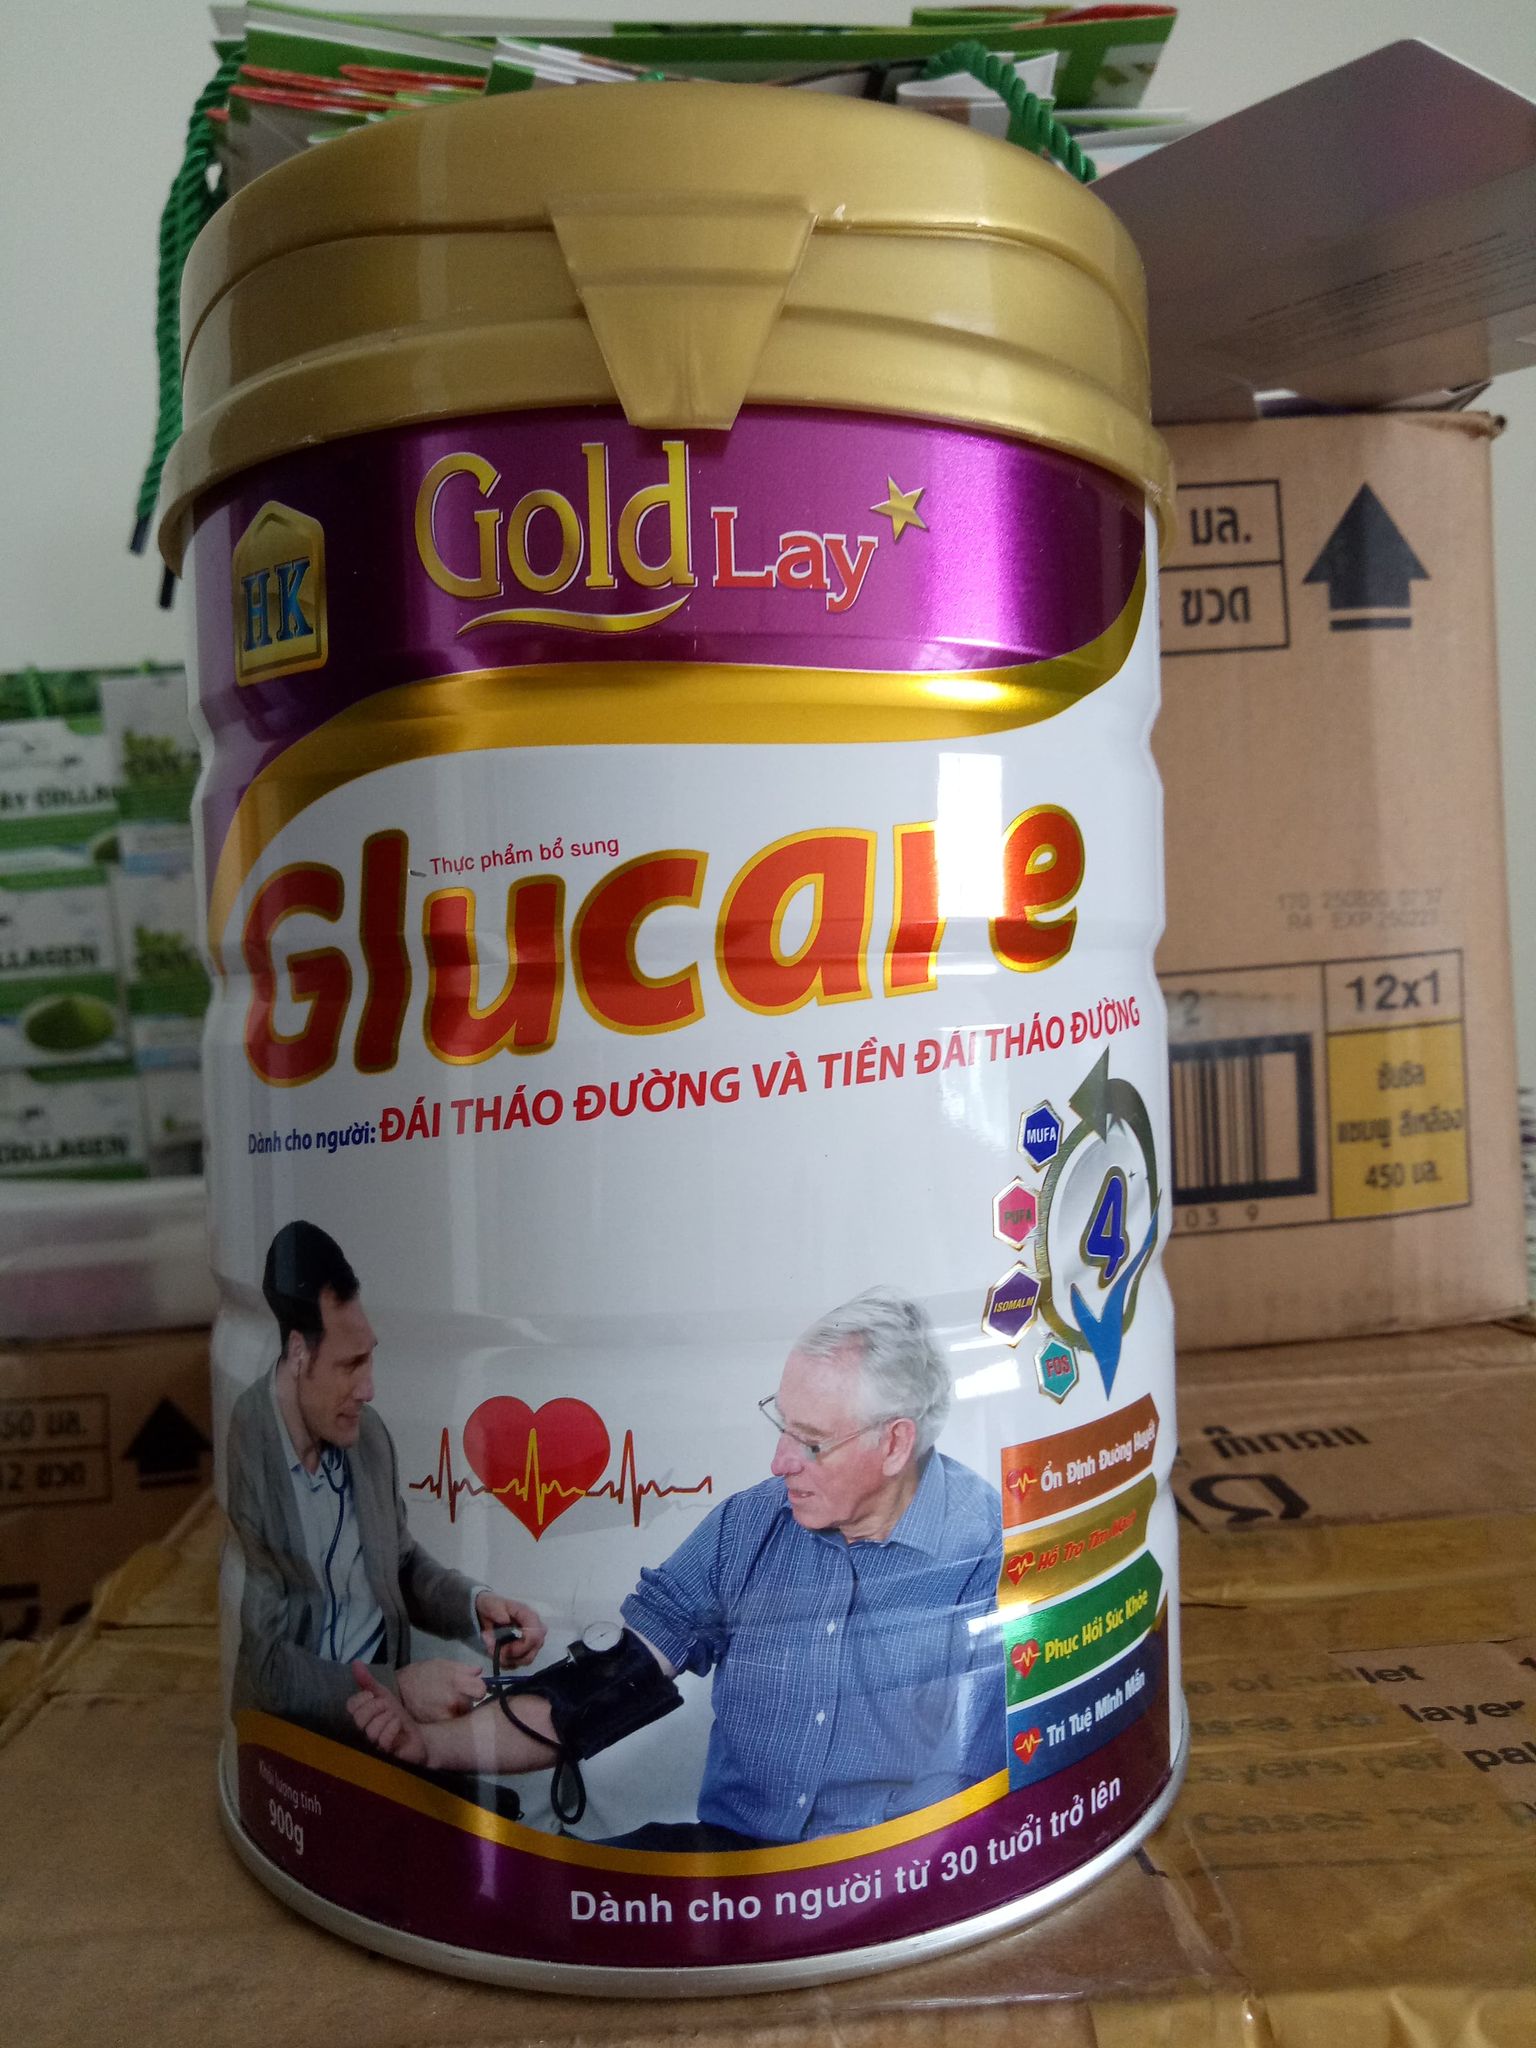 Sữa bột Glucare Goldlay 900gr dành cho người tiểu đường - Glucare Gold-lay